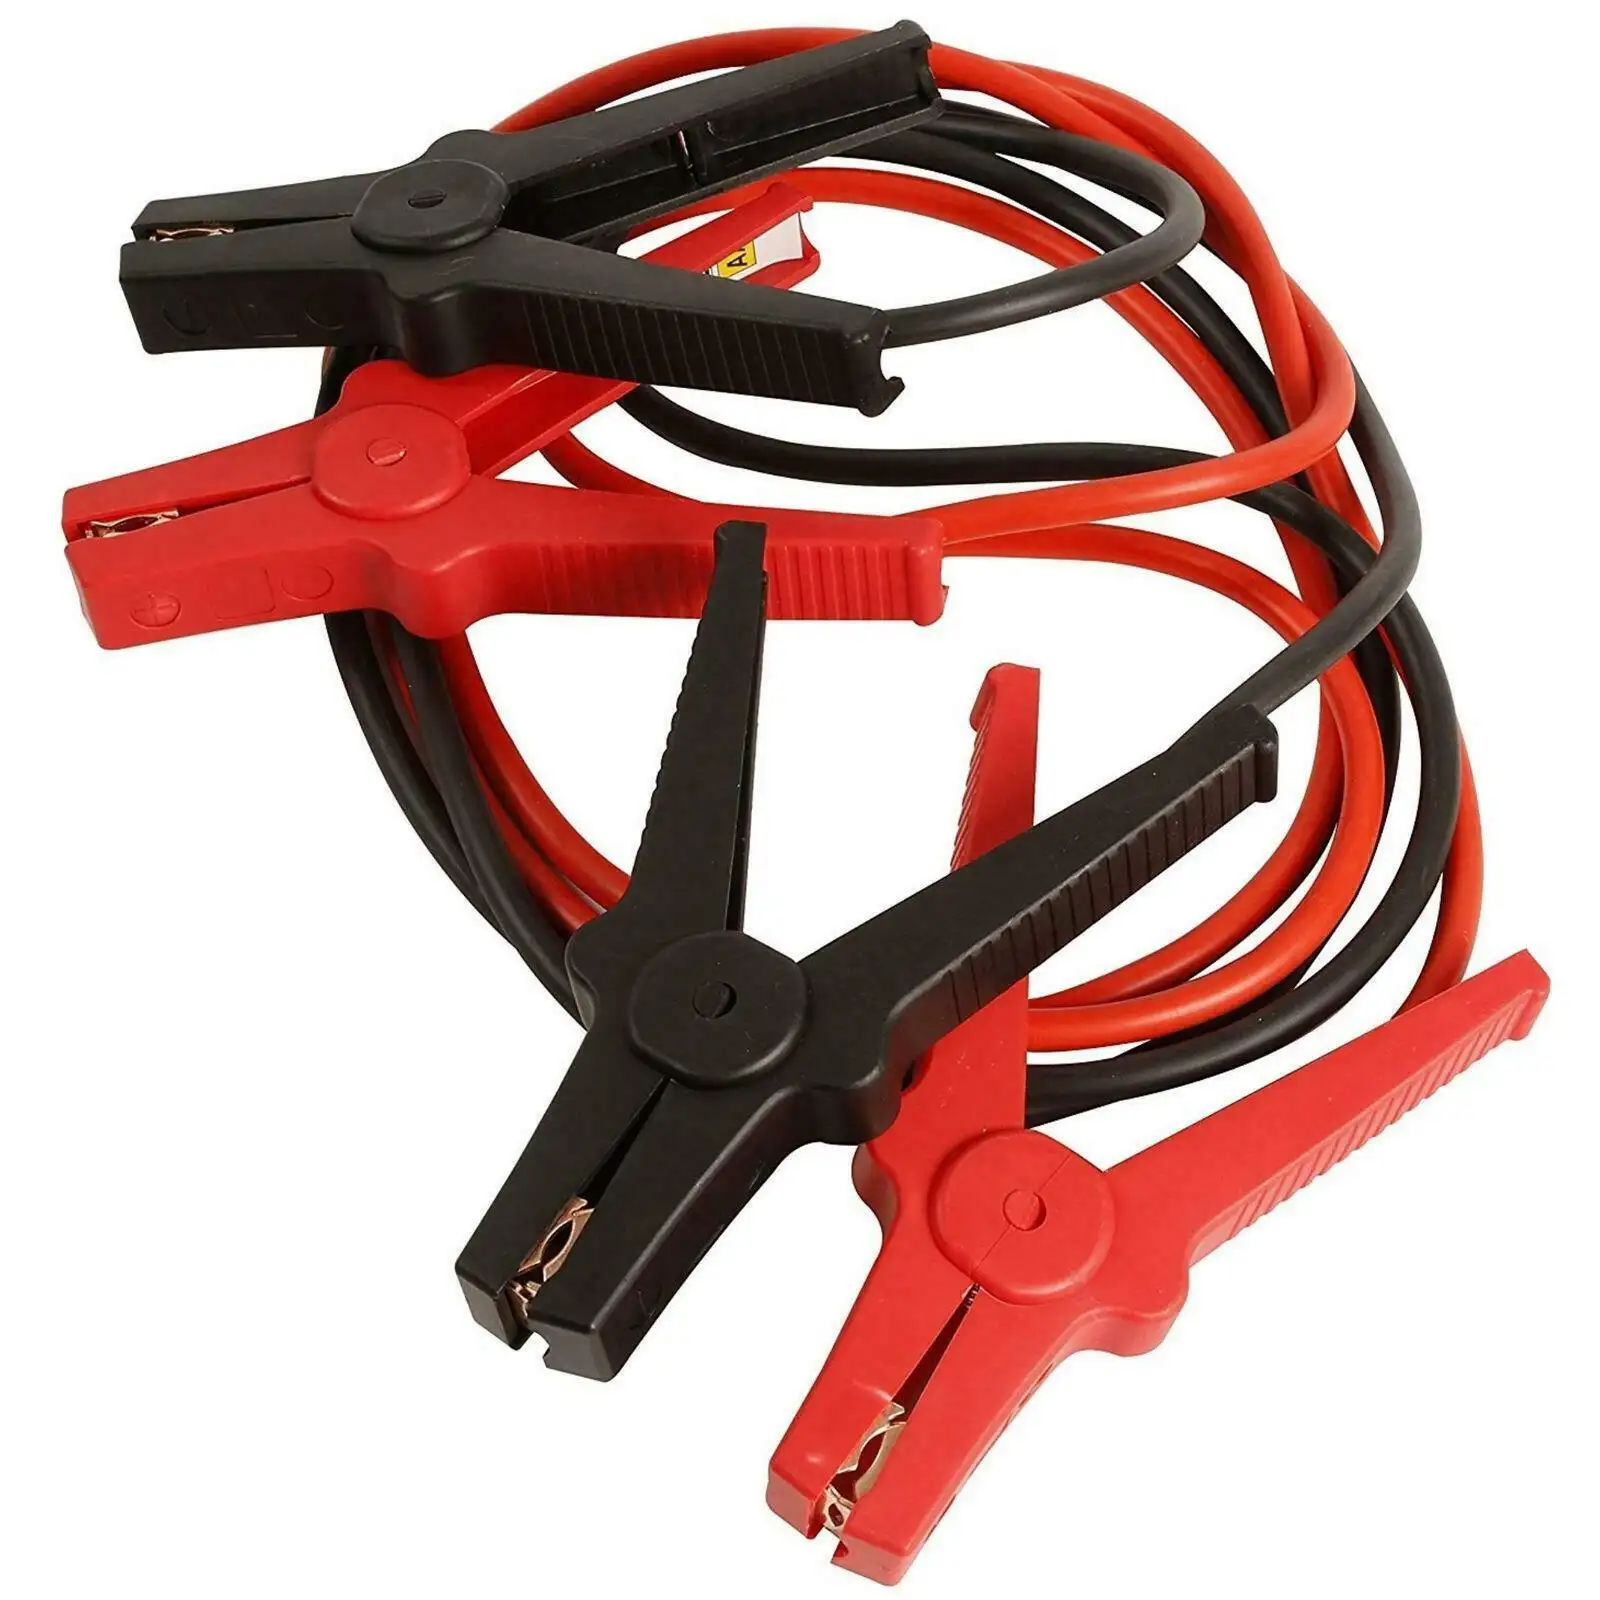 Hochwertige GS Plastic Clamp Booster-Kabel für Automobile Notfall beste Booster-Kabel für Autos